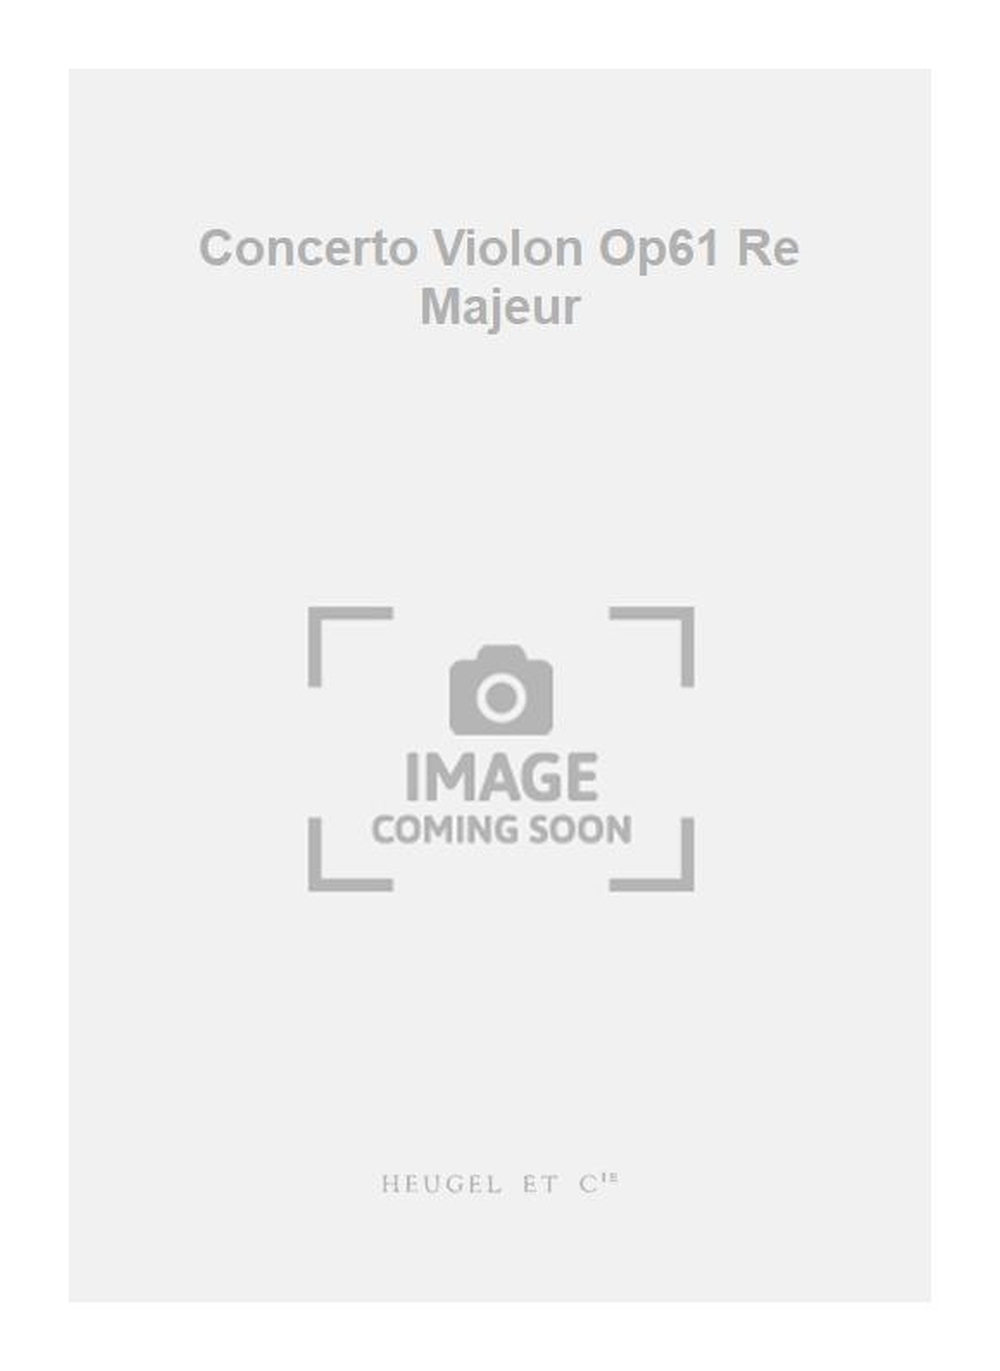 Ludwig van Beethoven: Concerto Violon Op61 Re Majeur